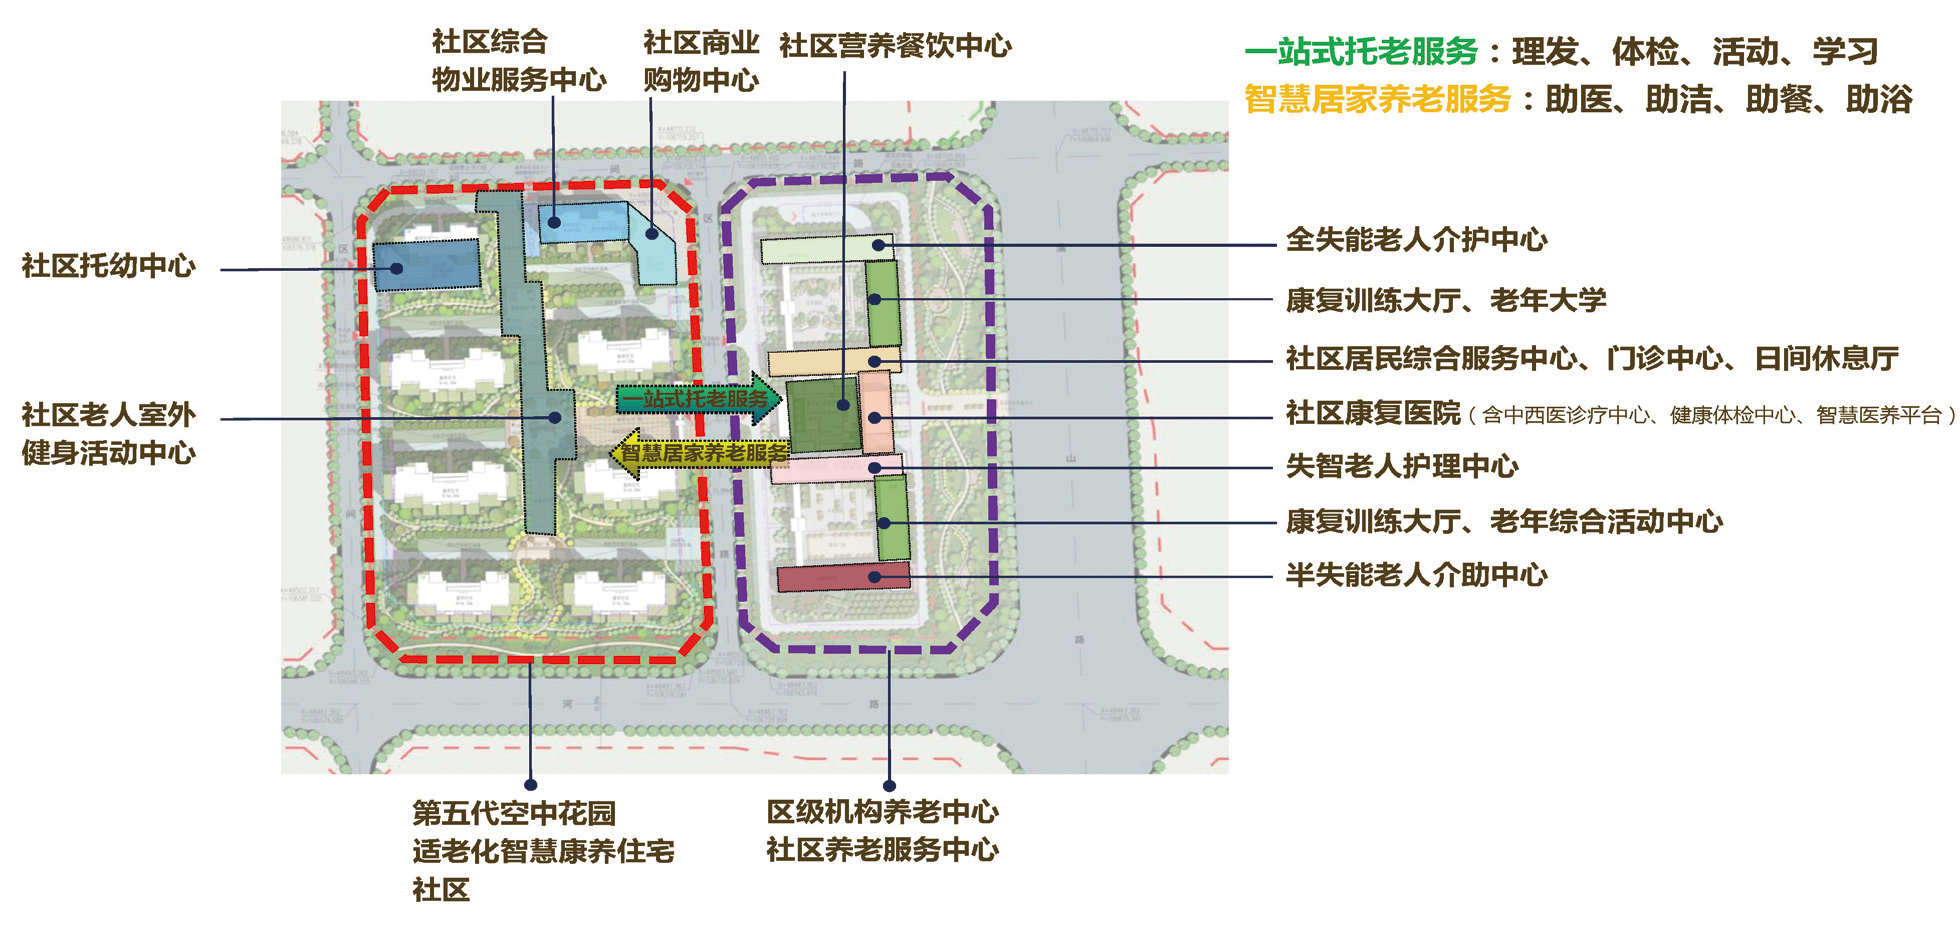 1 智慧康养未来社区设计功能及理念（图片来源：南阳市CCRC未来社区规划设计资料）.png